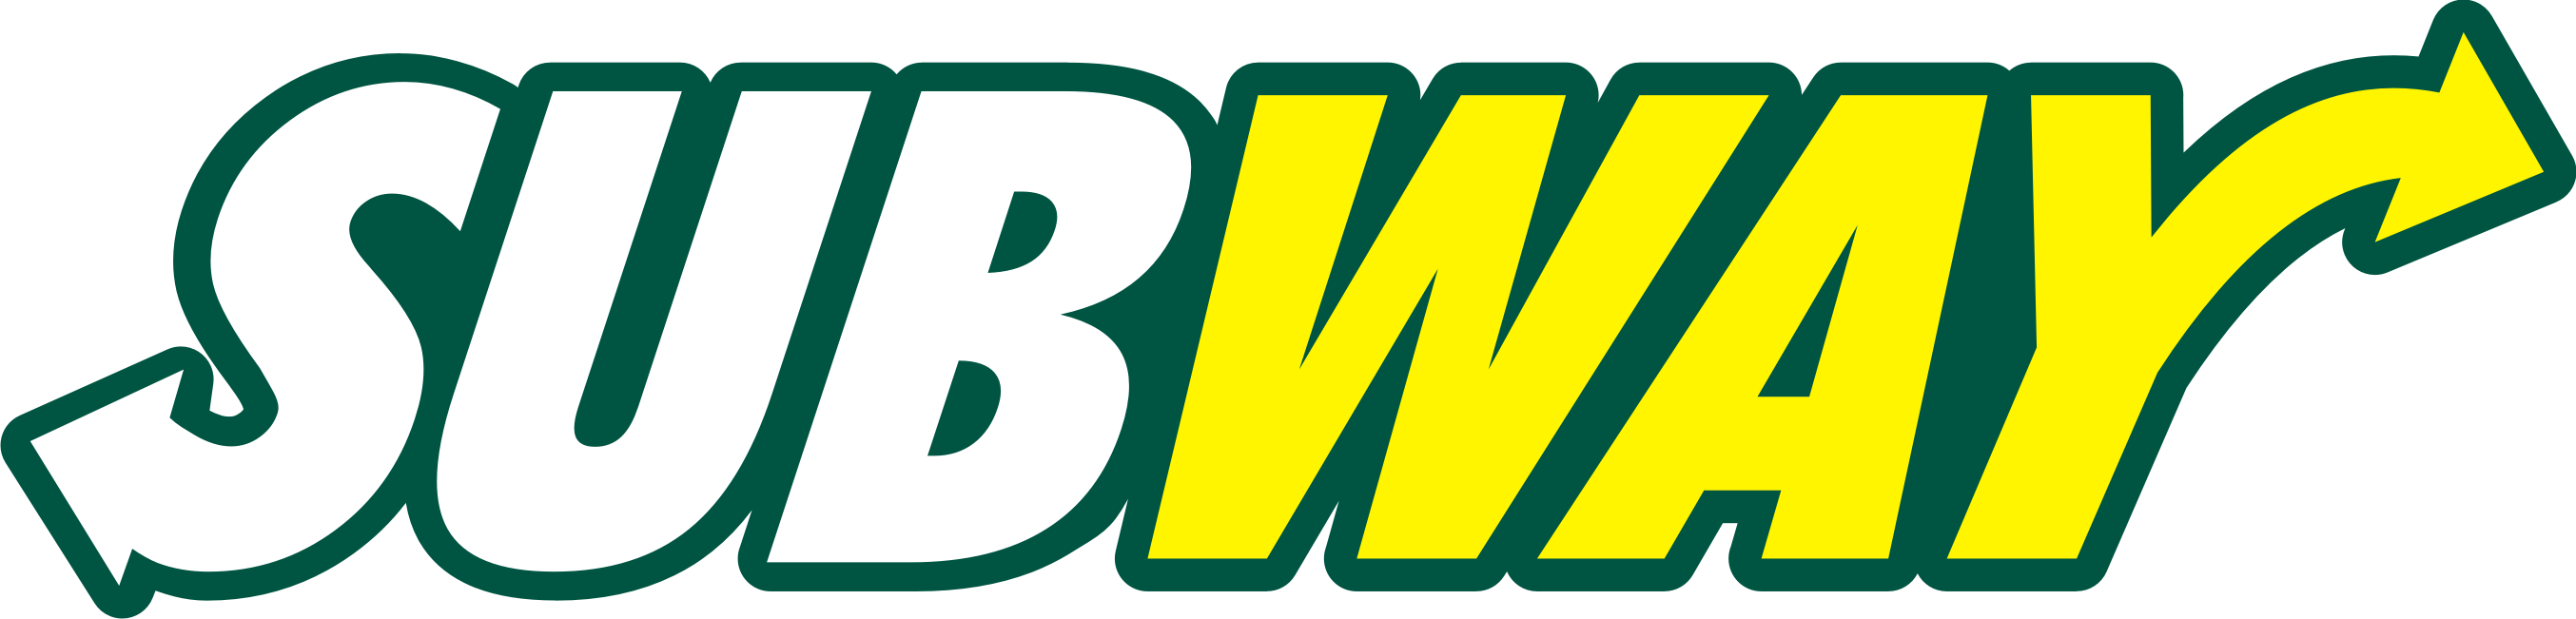 subway logo png